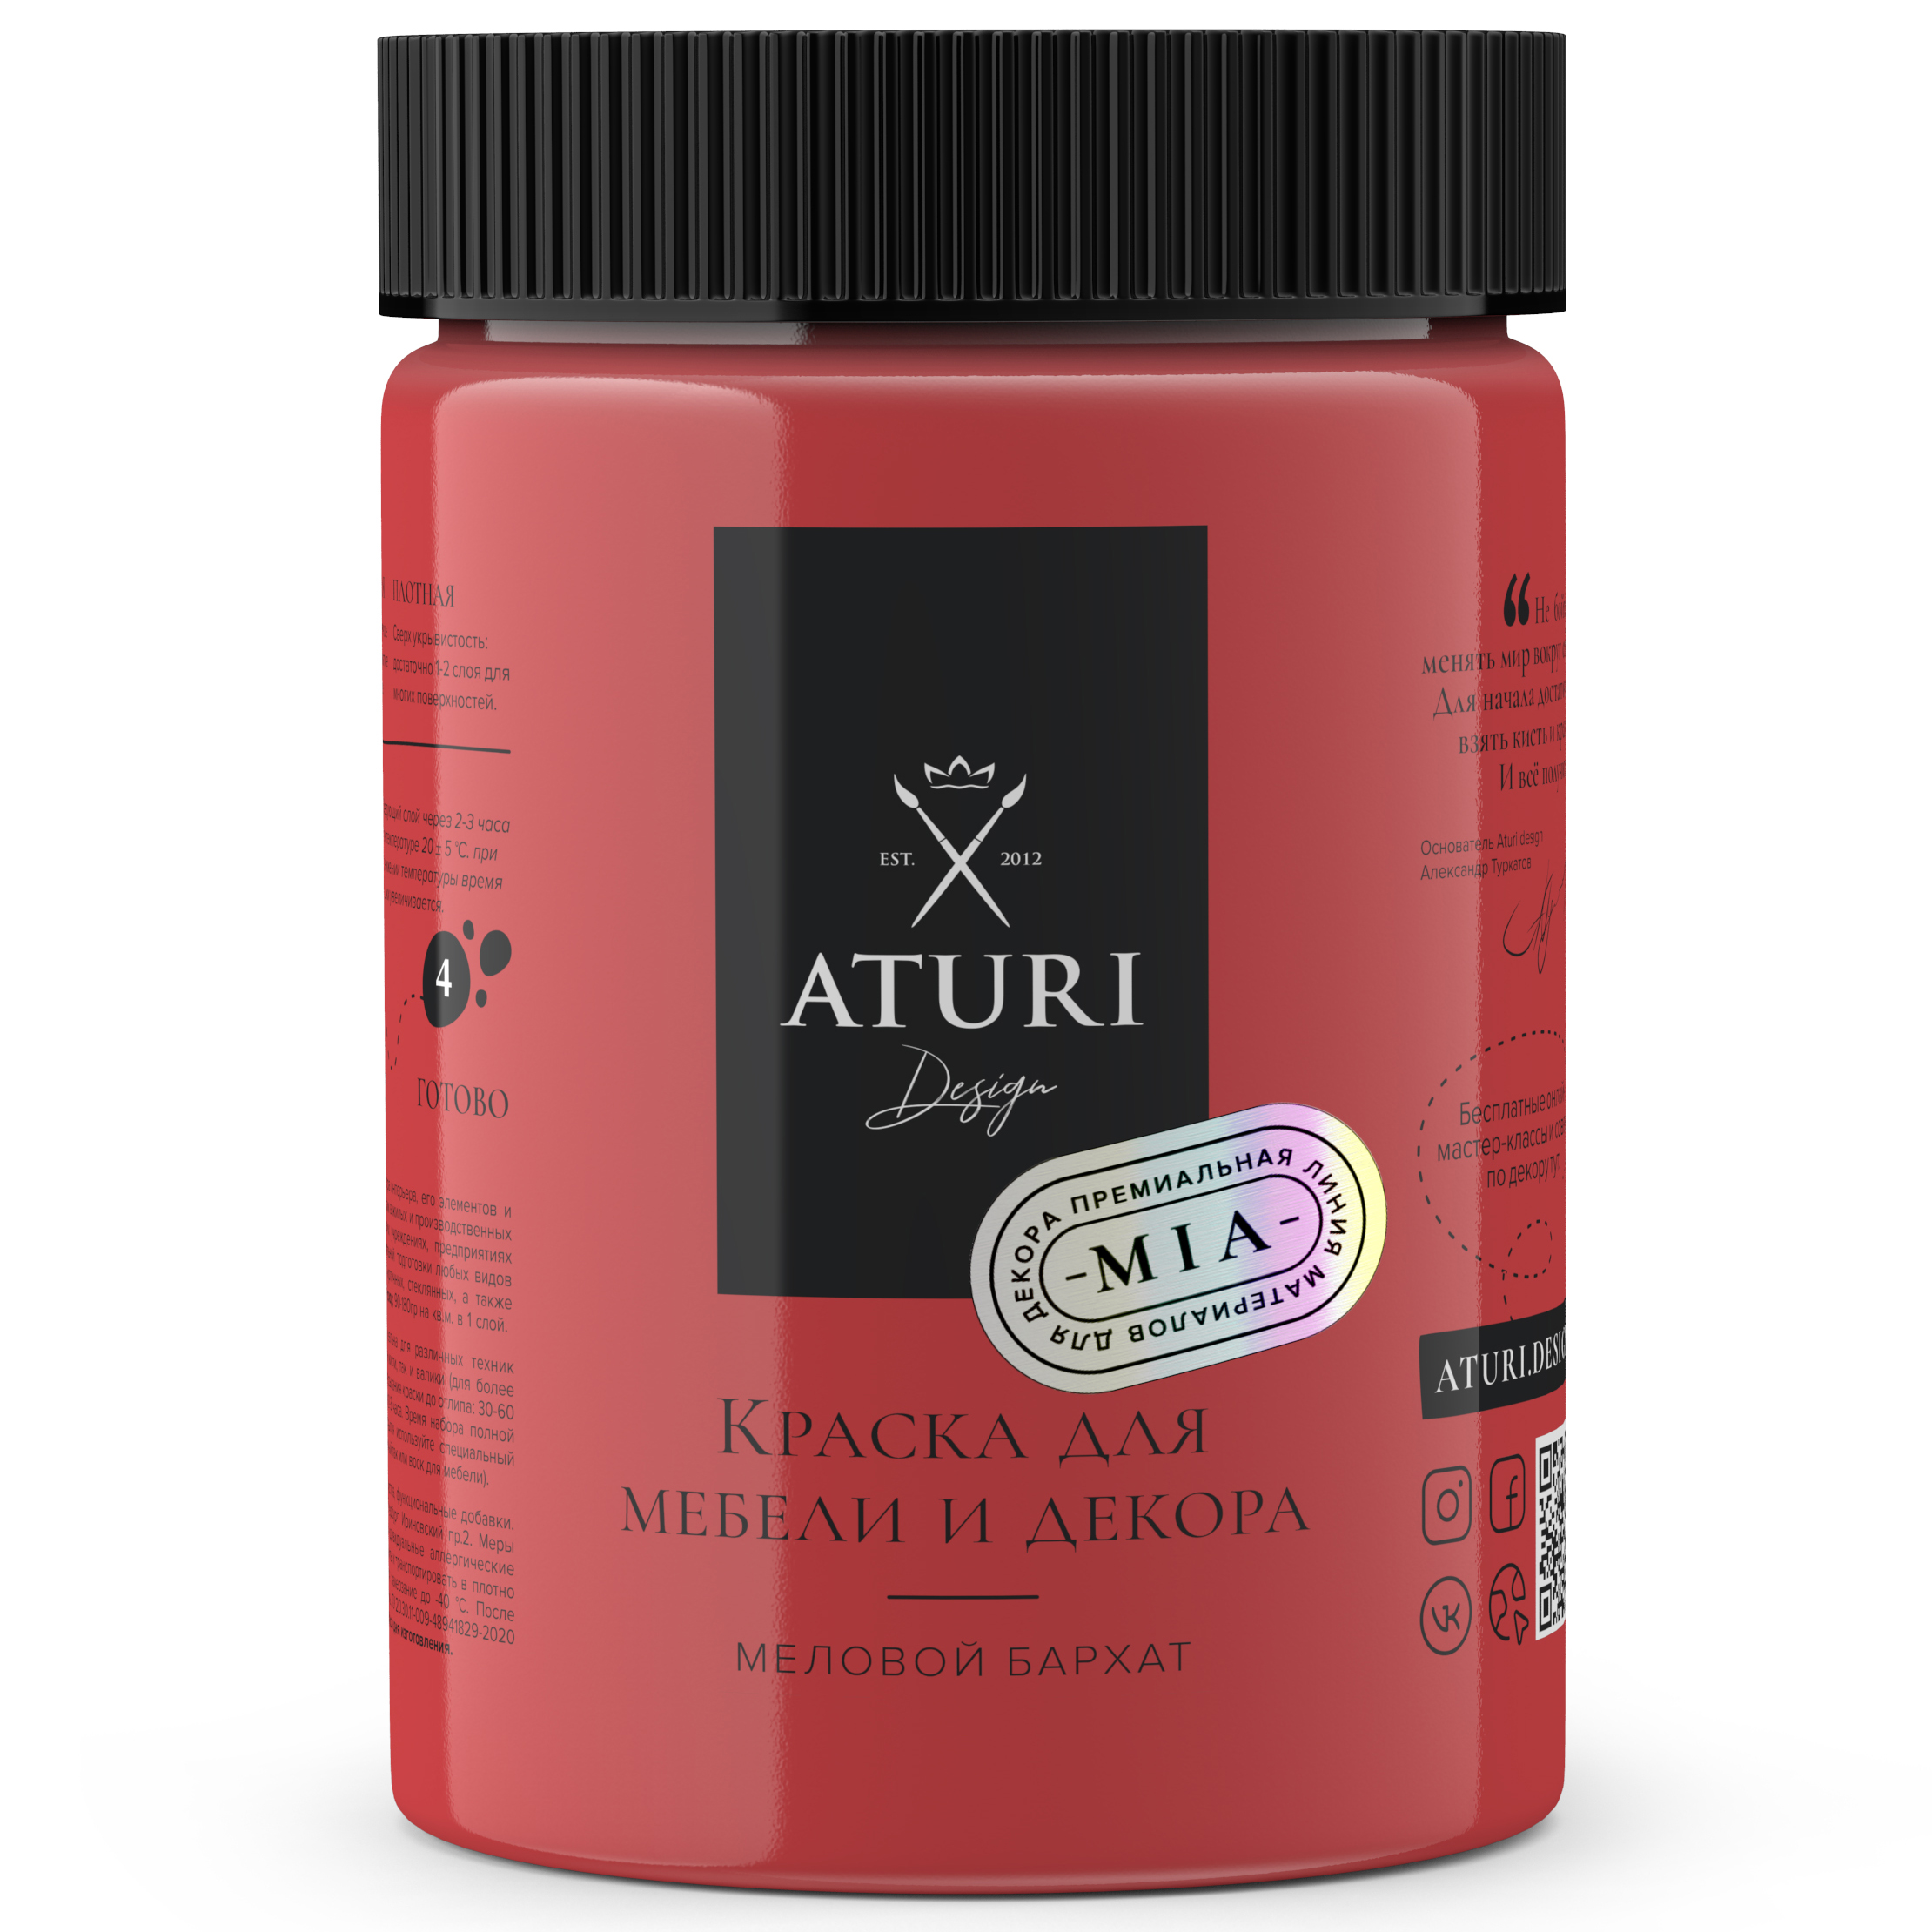 Краска Aturi Design Mia для мебели и декора, меловой бархат; Цвет: Красная помада, 830гр